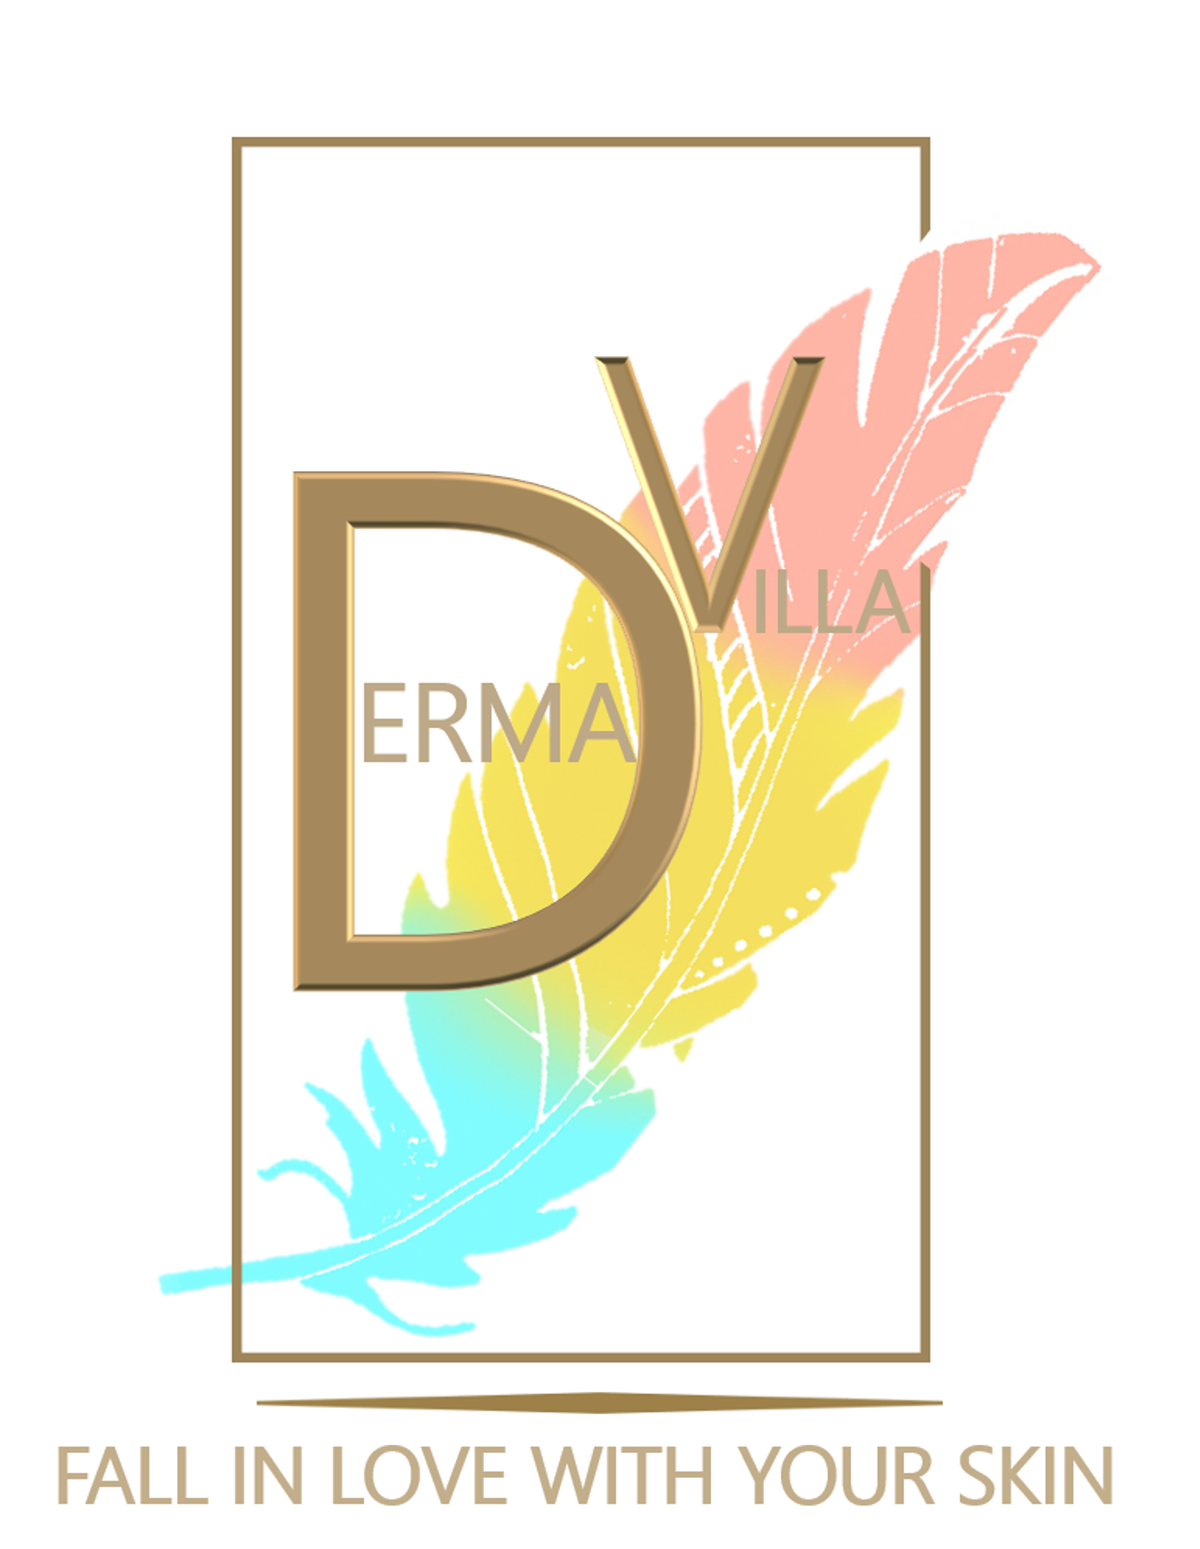 Dermavilla Hair & Skin Clinic